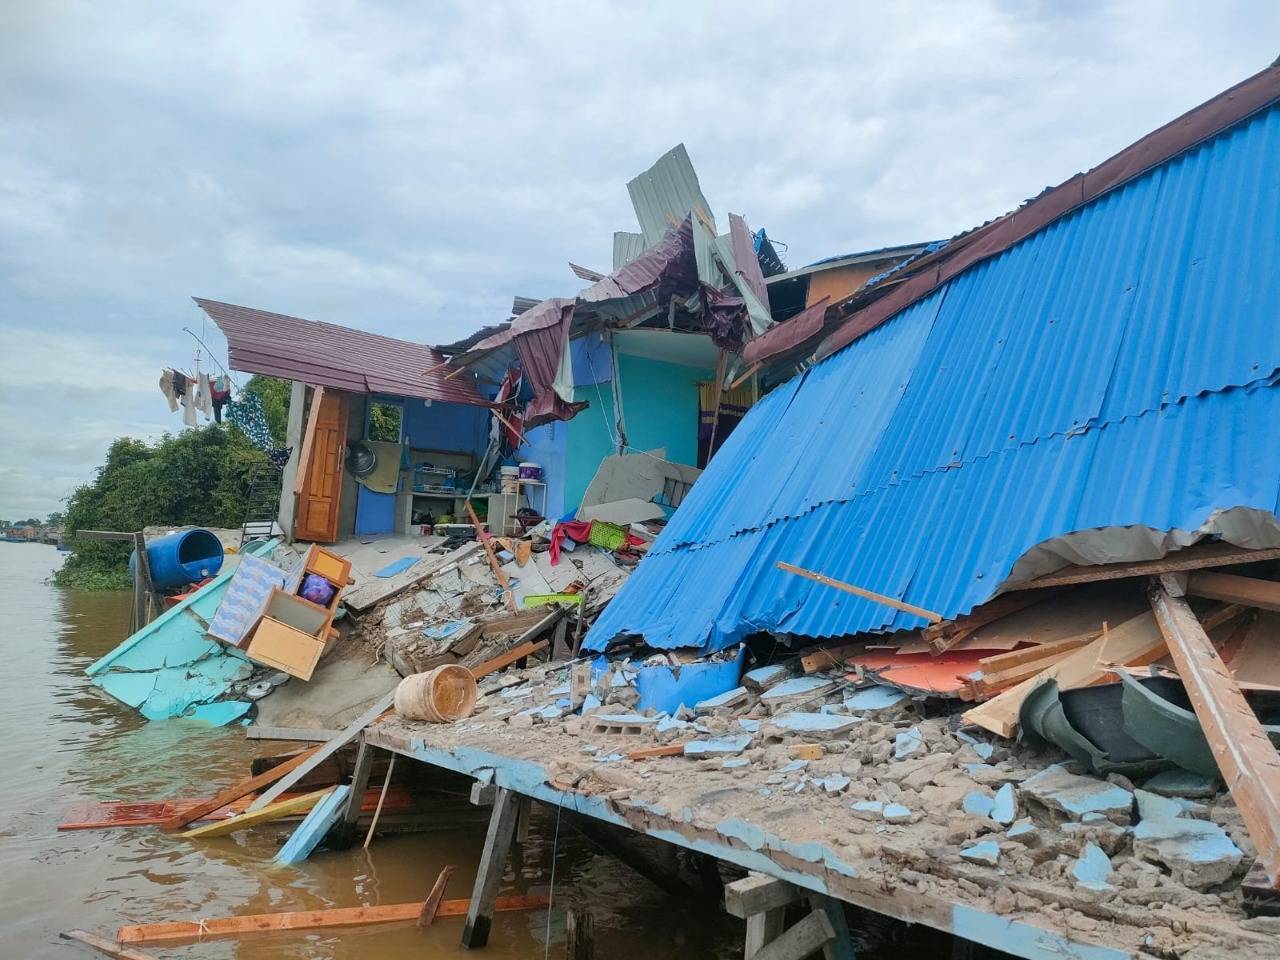 Tiga buah rumah warga di Jalan Adisucipto, Gang Tiga Saudara, Kabupaten Kubu Raya, ambruk pasca ditabrak kapal tongkang, pada Selasa (21/6/2022) pagi. (Foto: Istimewa)